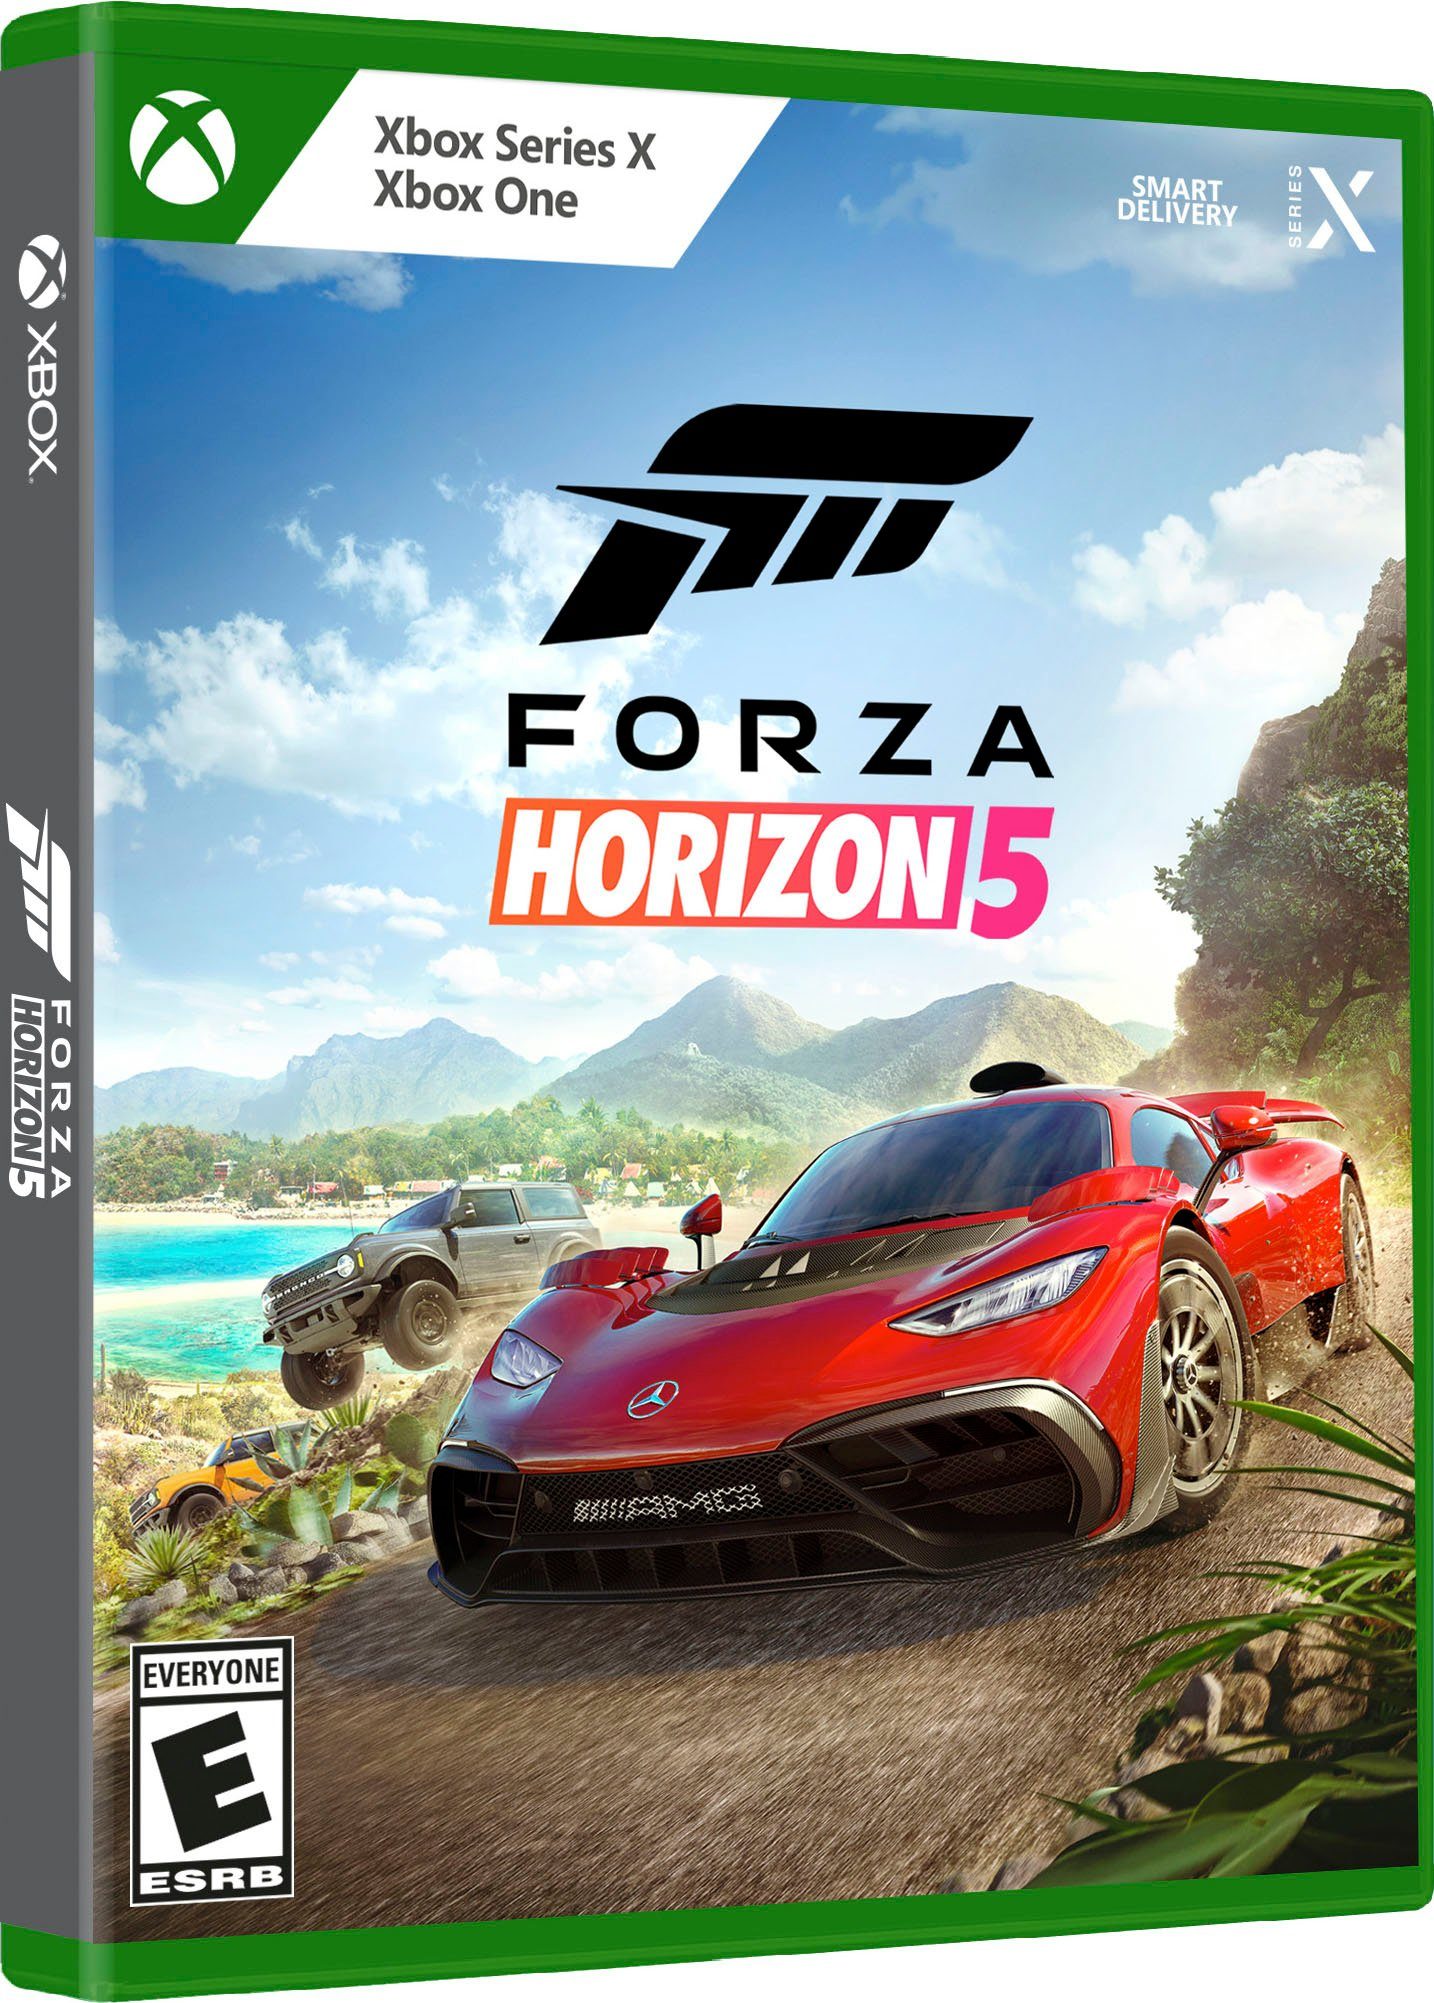 Xbox Forza Horizon 5 Xbox Series X online kaufen | OTTO